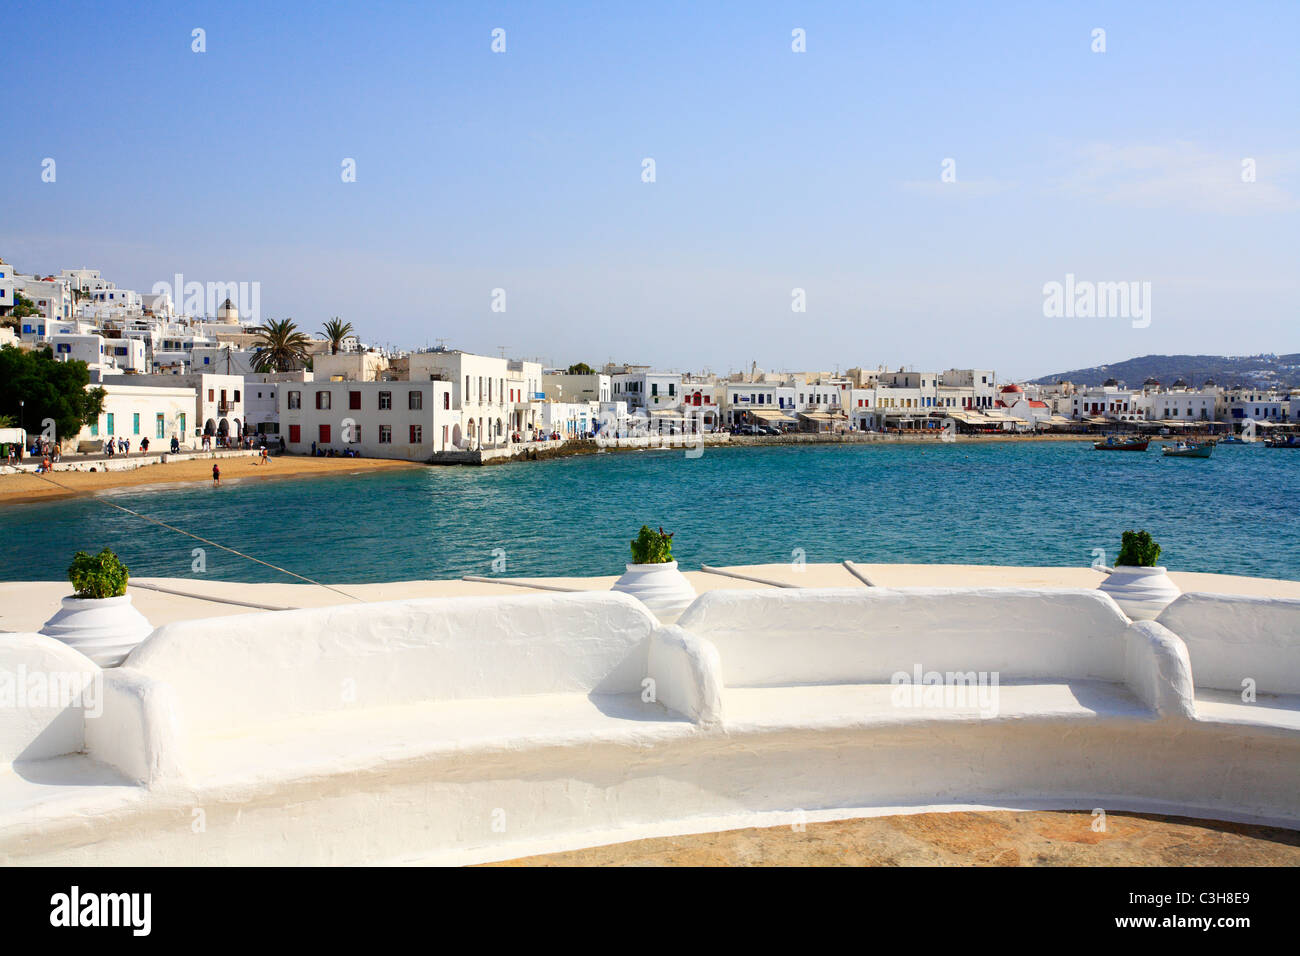 La vista del porto di Mykonos isola cicladi grecia Unione europea Europa Unuion Foto Stock